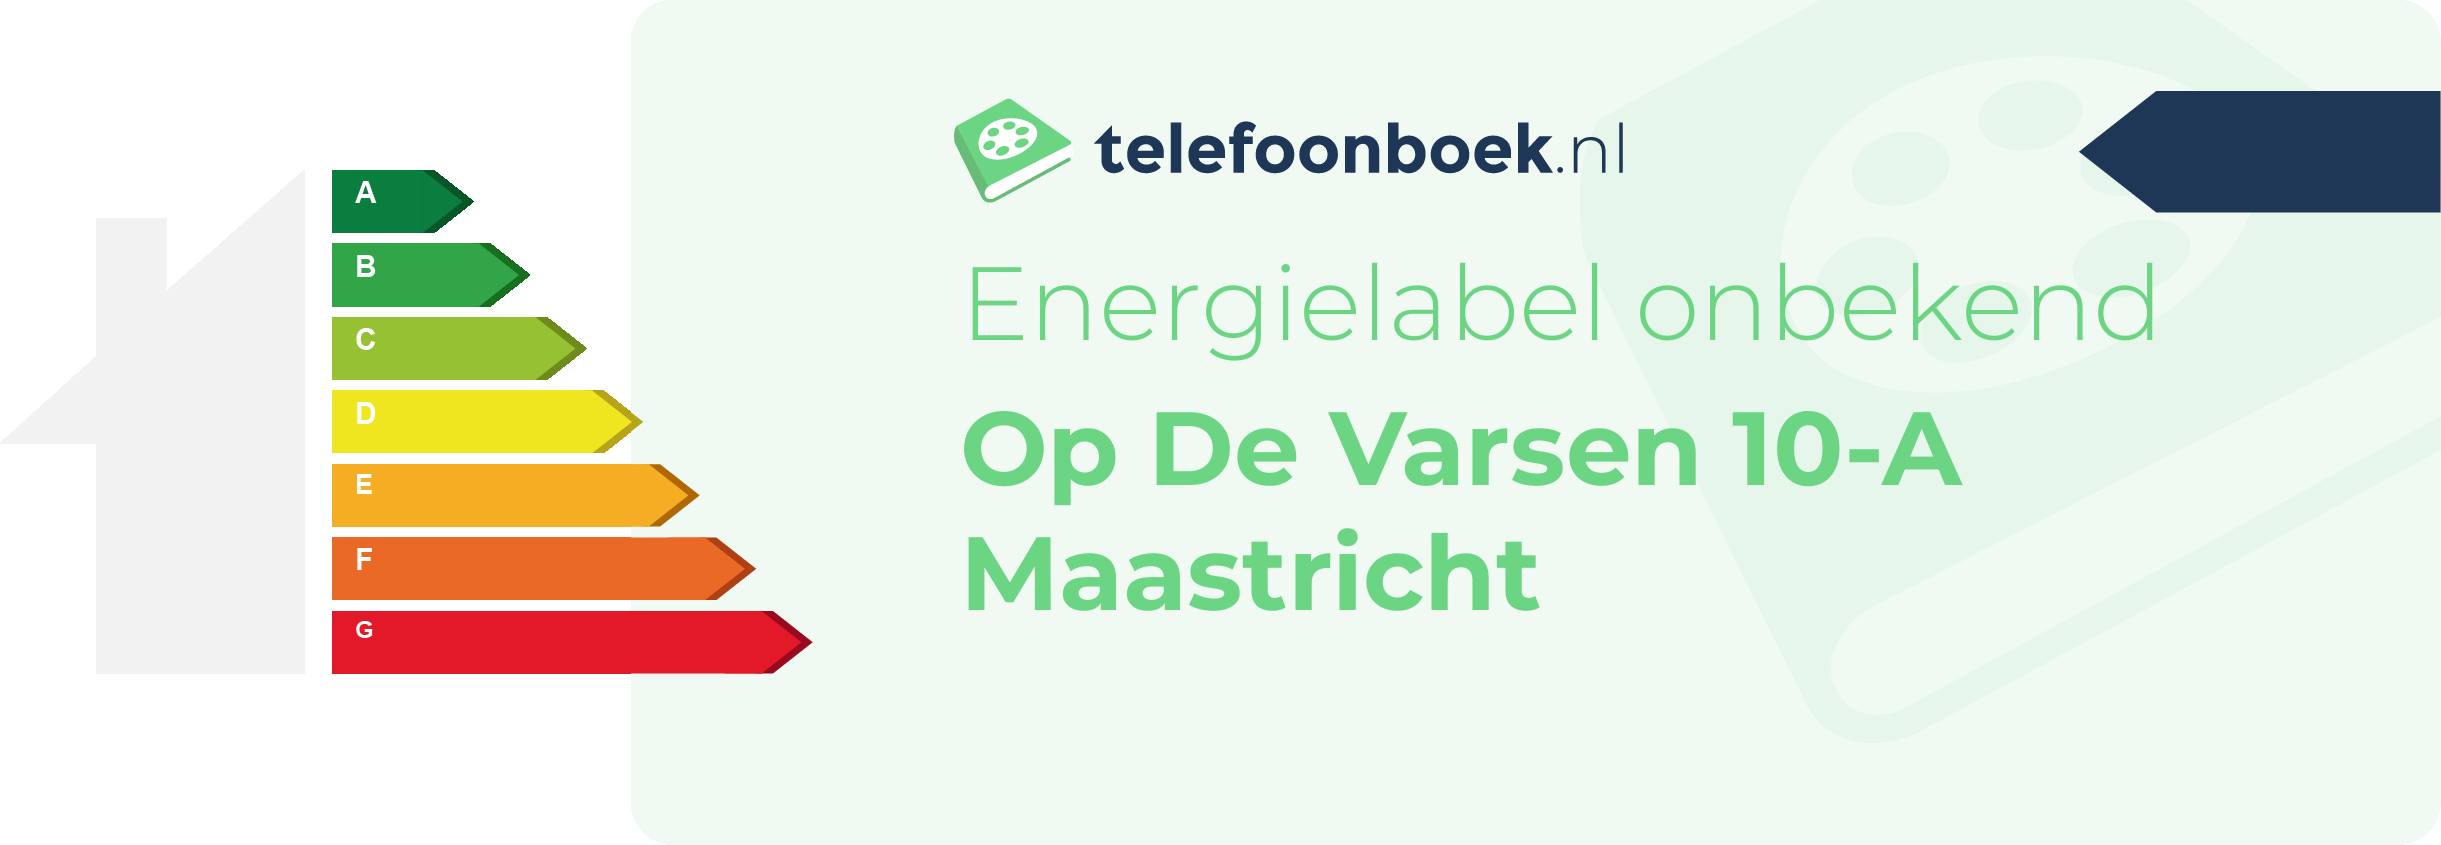 Energielabel Op De Varsen 10-A Maastricht